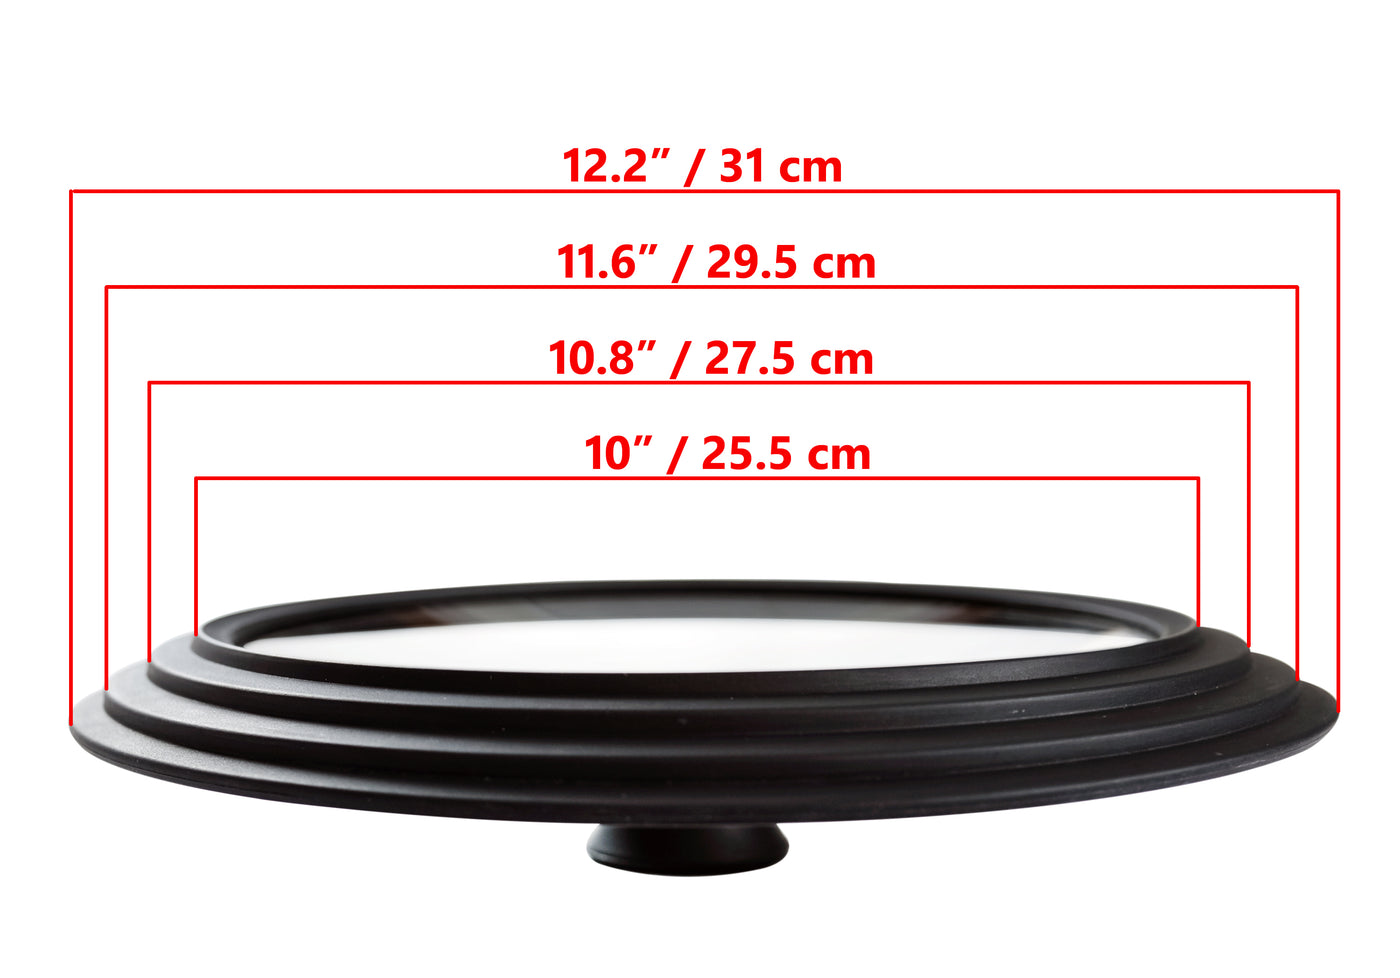 Универсальная стеклянная крышка, универсальный размер, диаметр внешних краев 31 см, для кастрюль и сковородок, черная